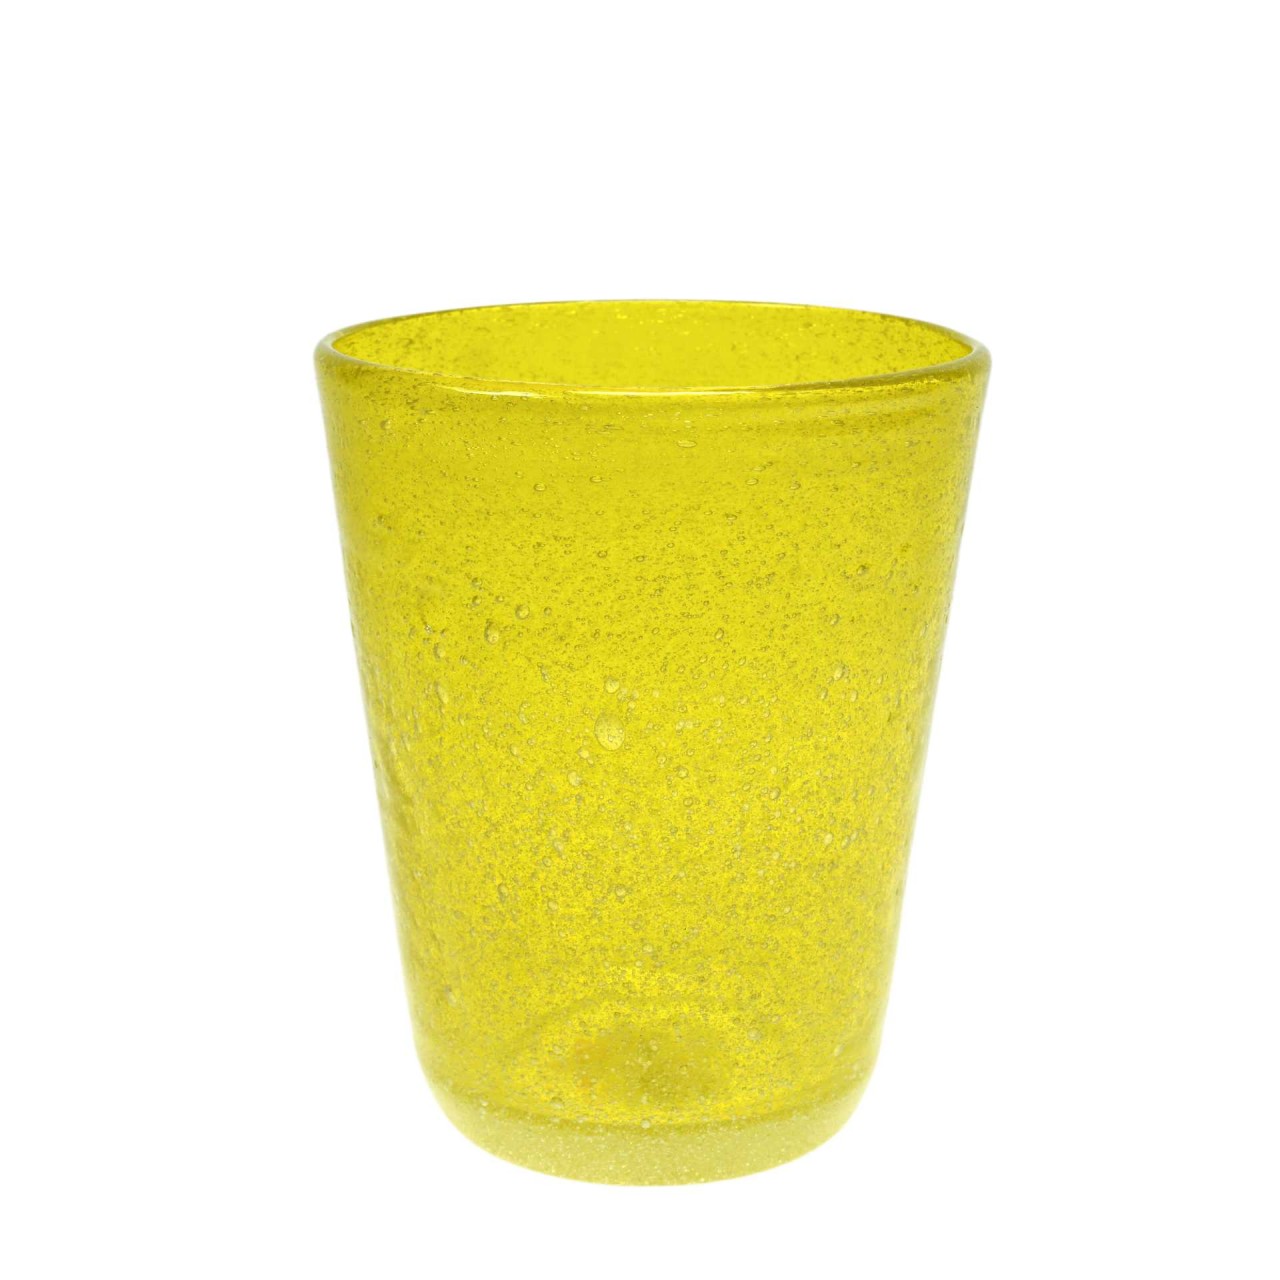 Trinkglas gelb transparent mundgeblasen 300ml